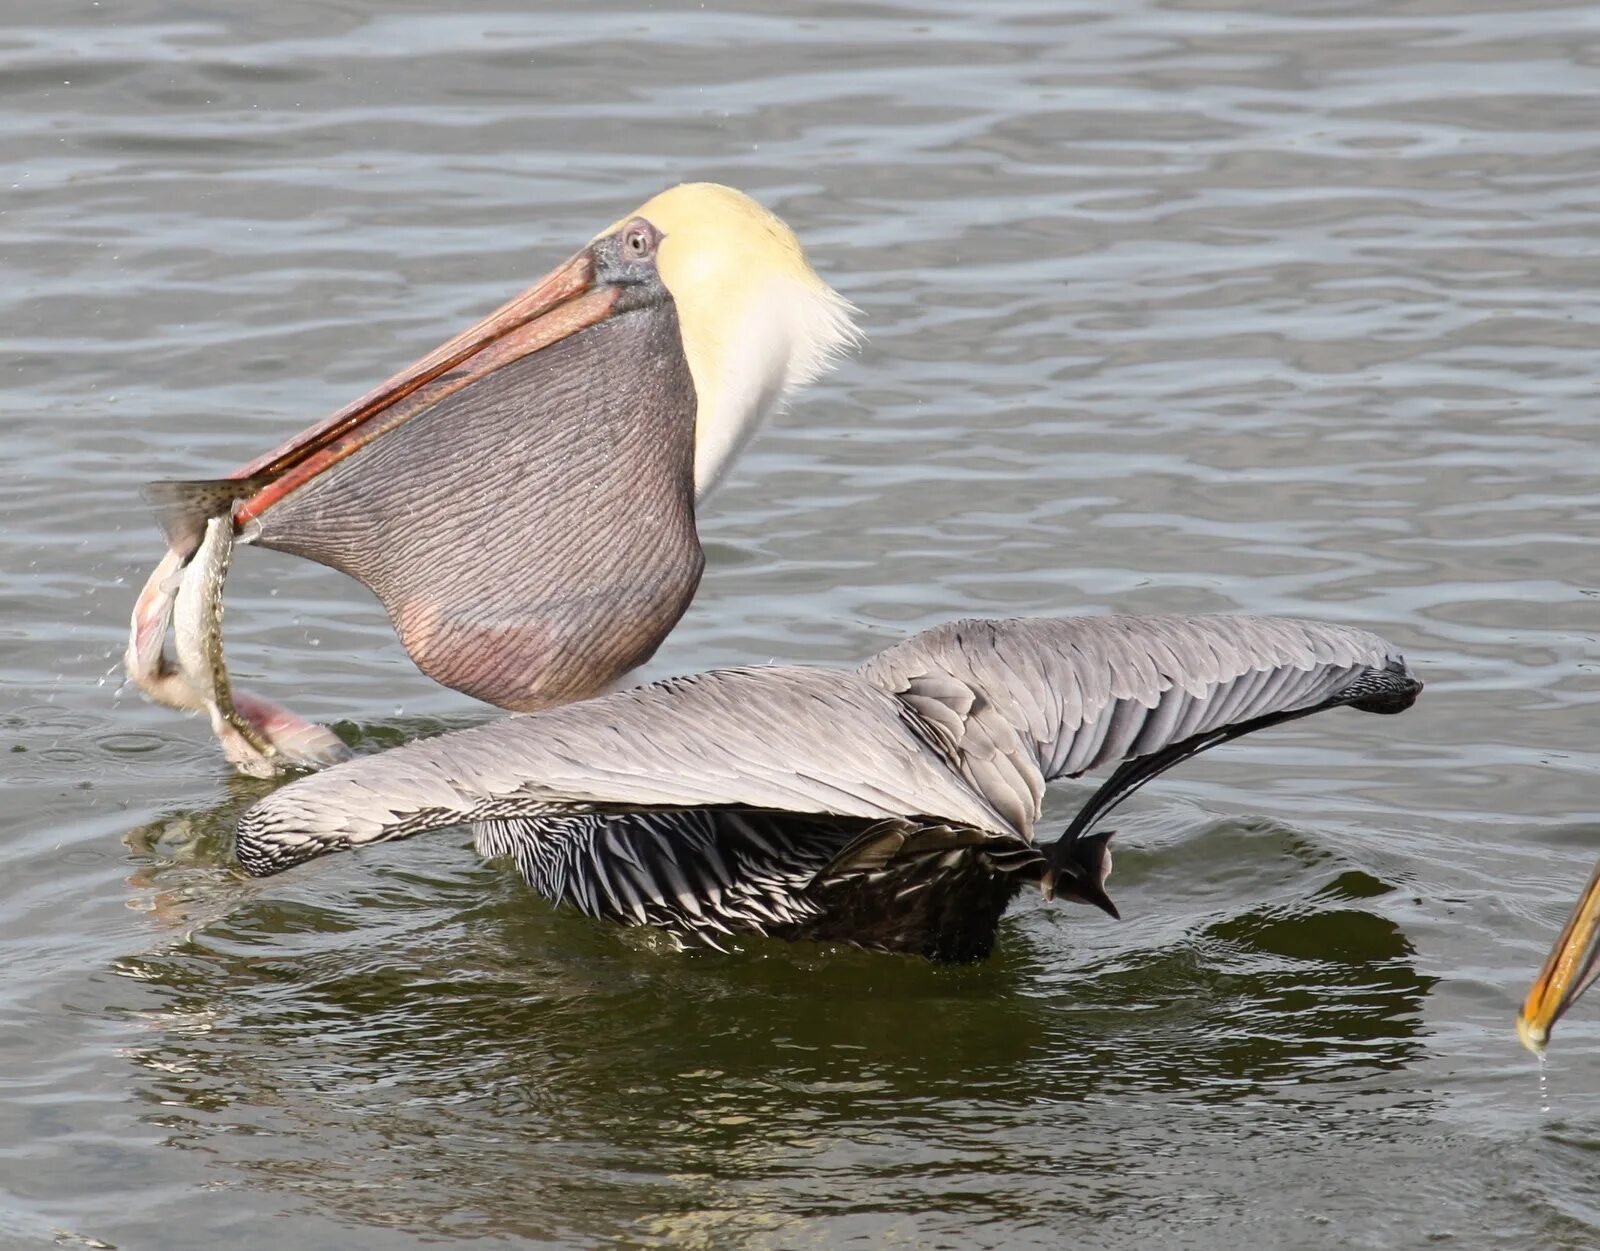 Пеликан мешконос птица. Большерот рыба-Пеликан. Клюв пеликана. Пеликан питается рыбой. Пеликан ловит рыбу